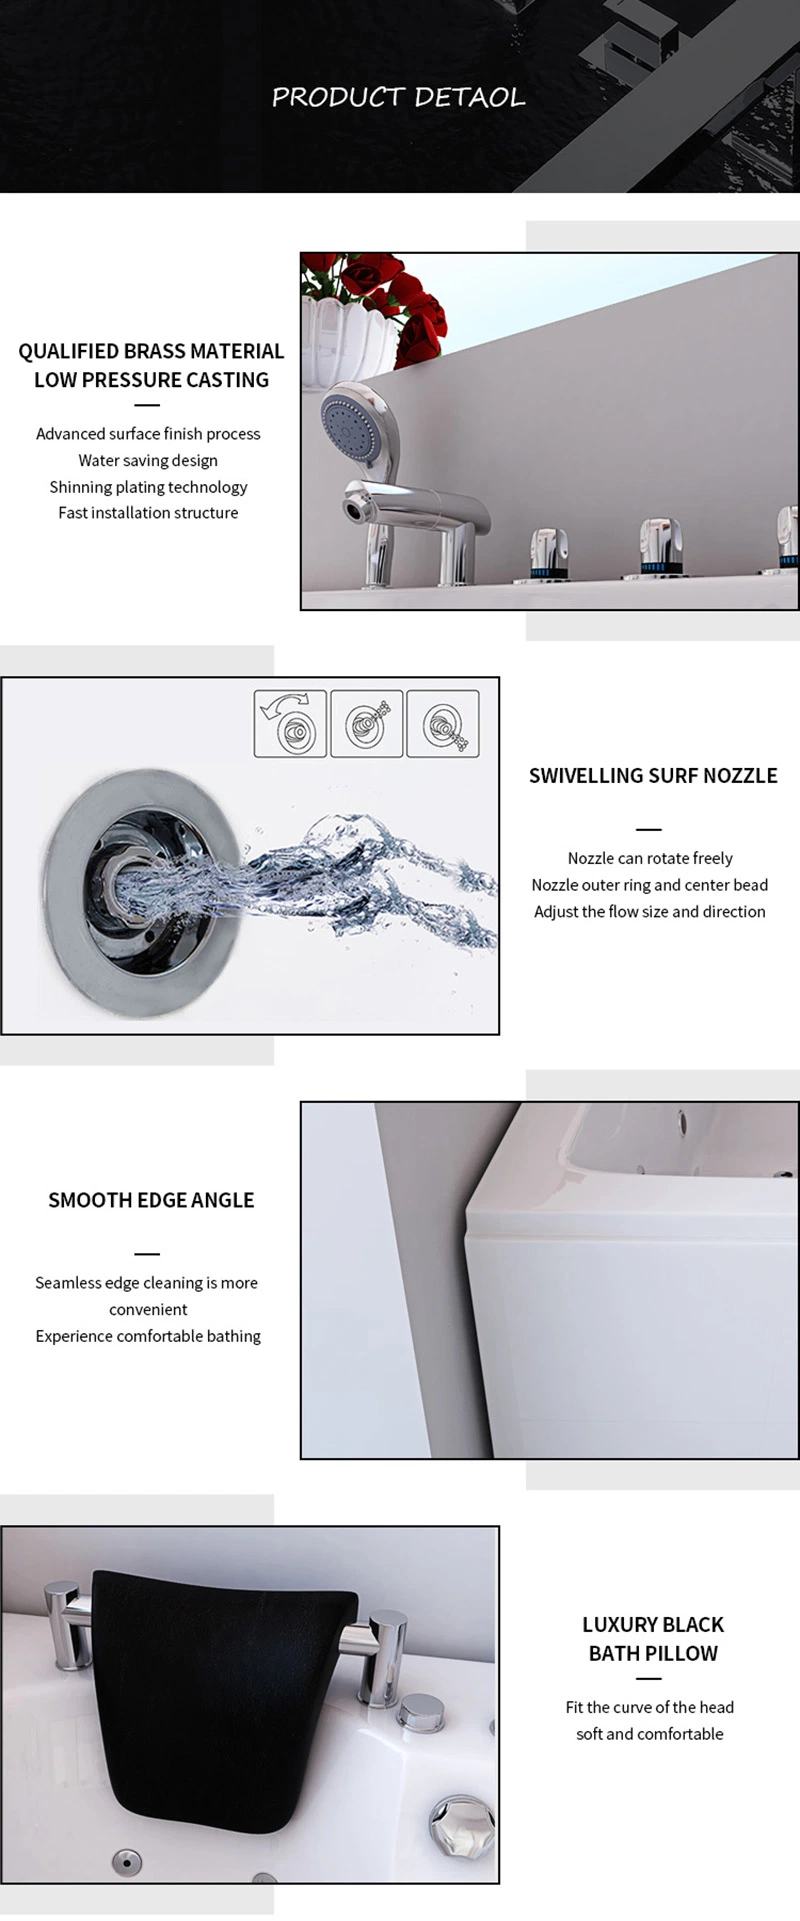 Whirlpool Bathtubs Foldable Portable Adult Plastic Grooming